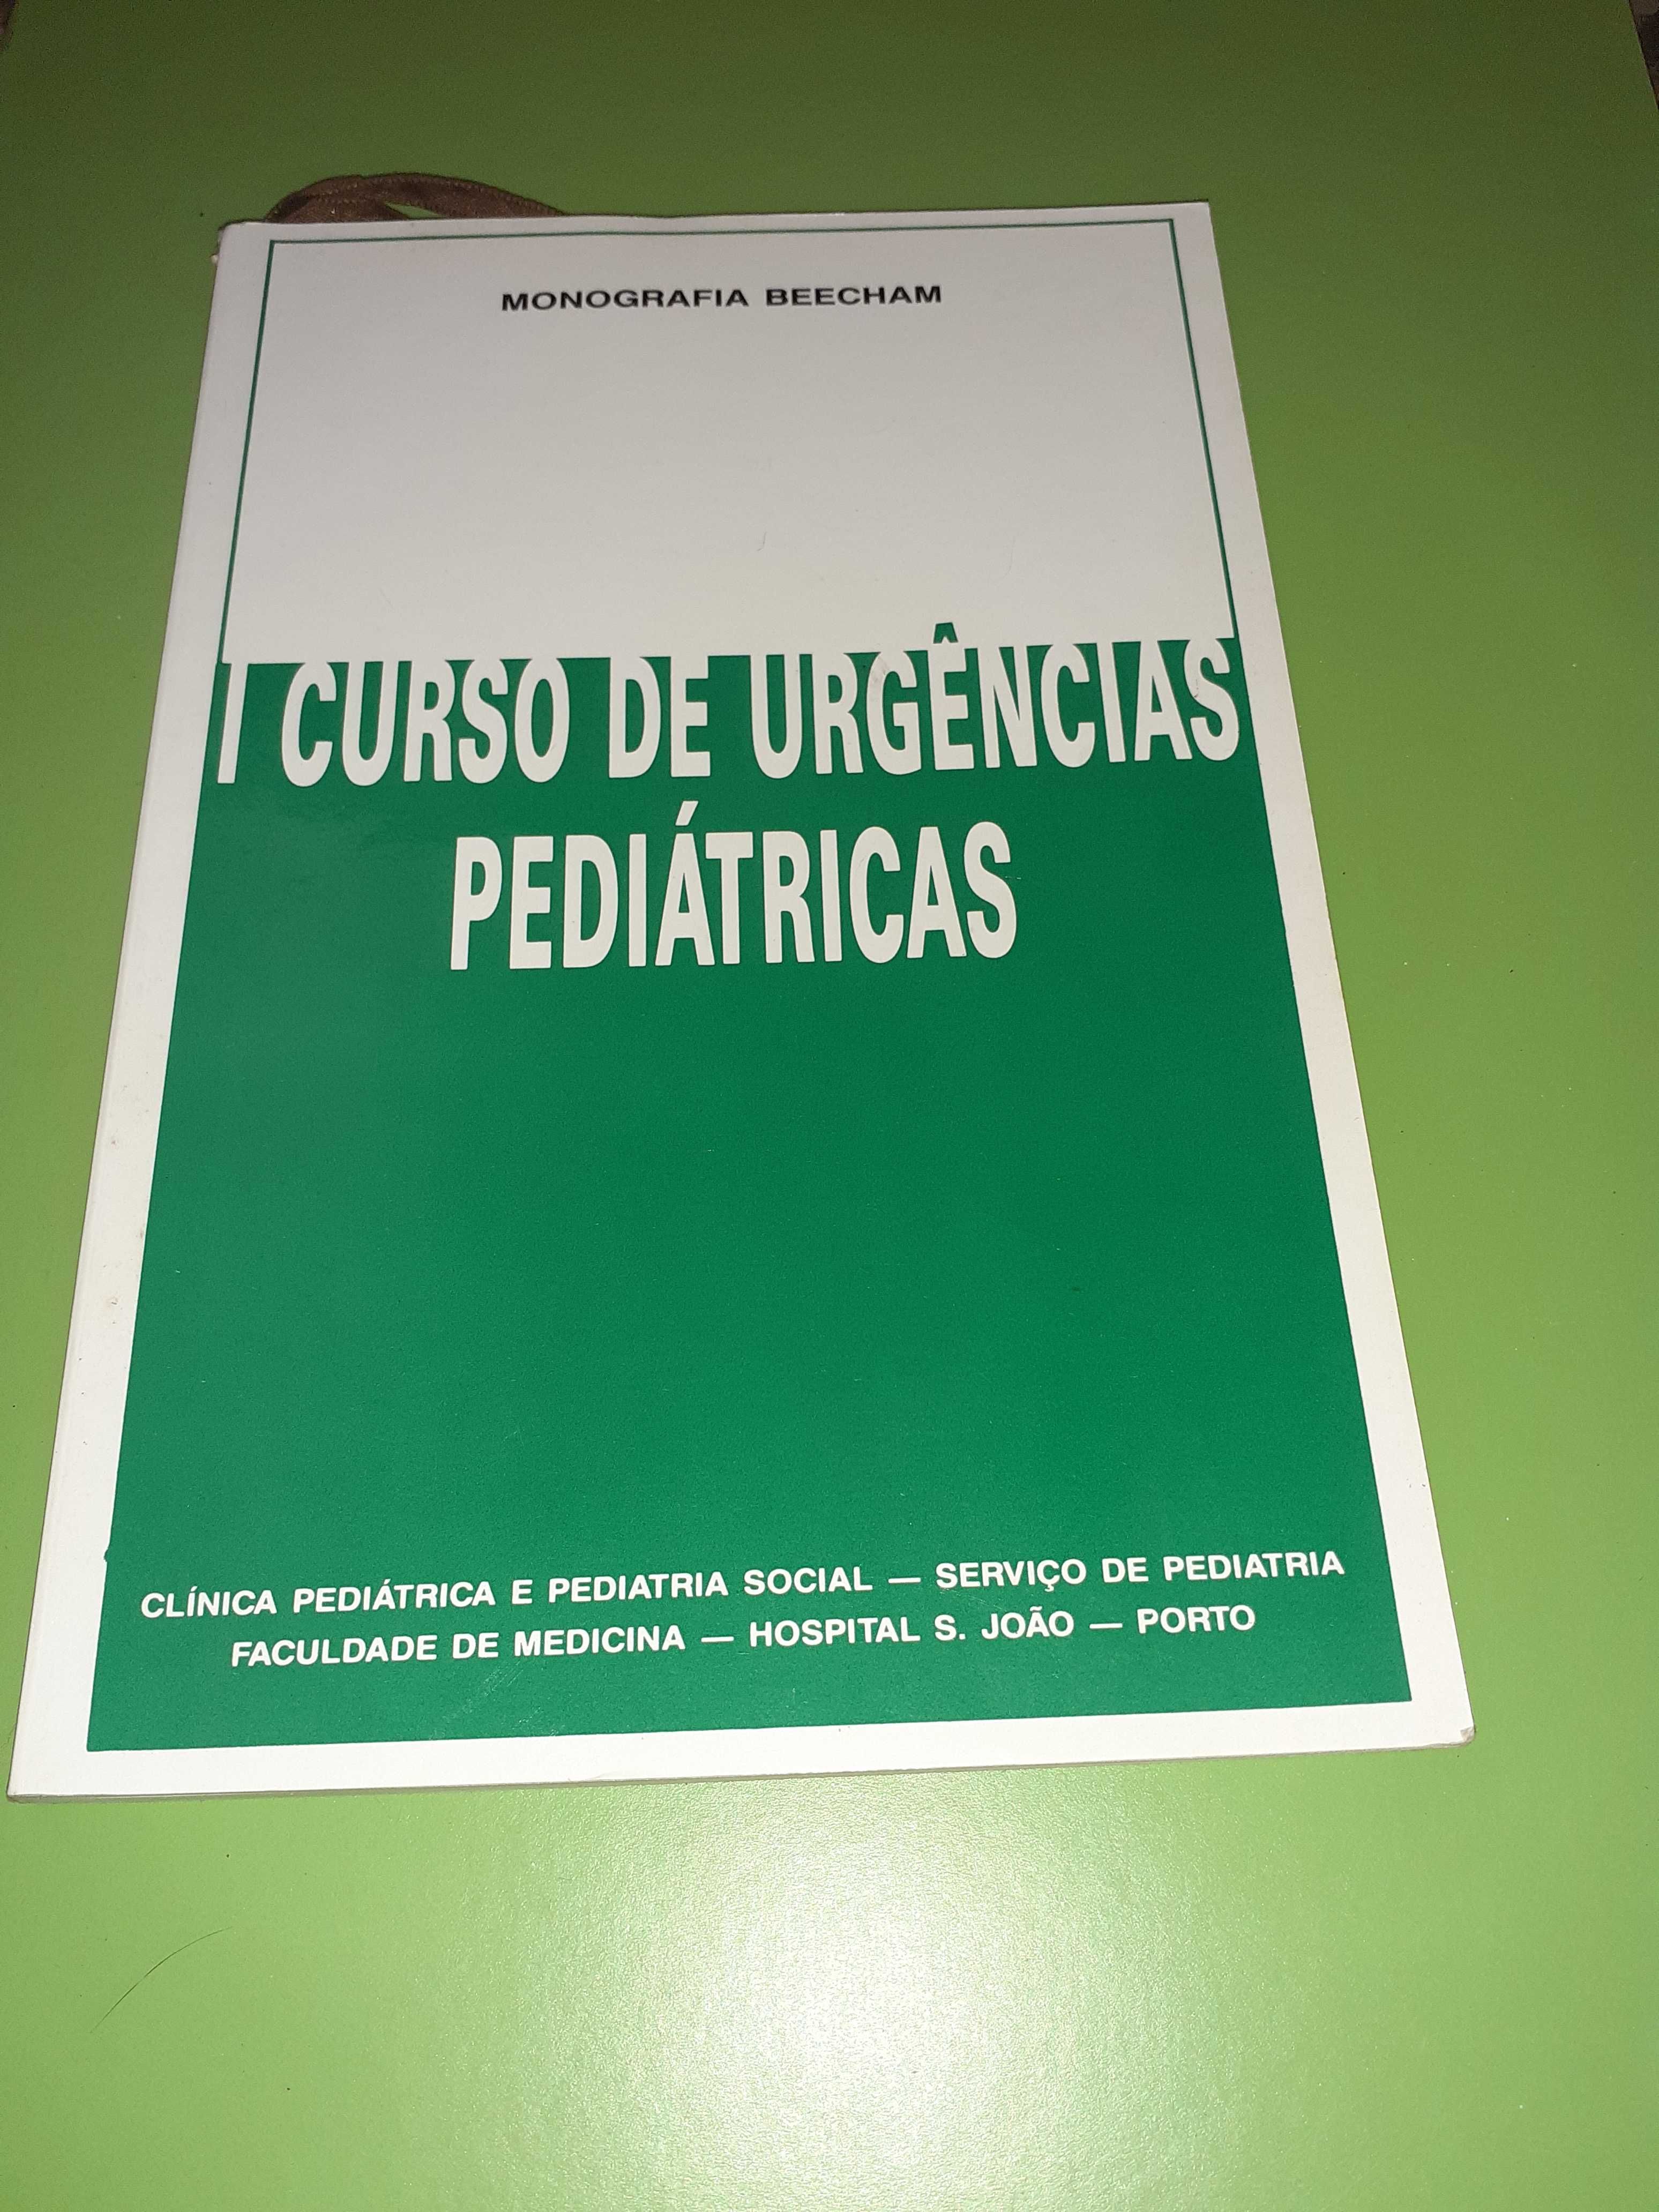 I Curso de Urgências Pediátricas - Monografia Beecham.